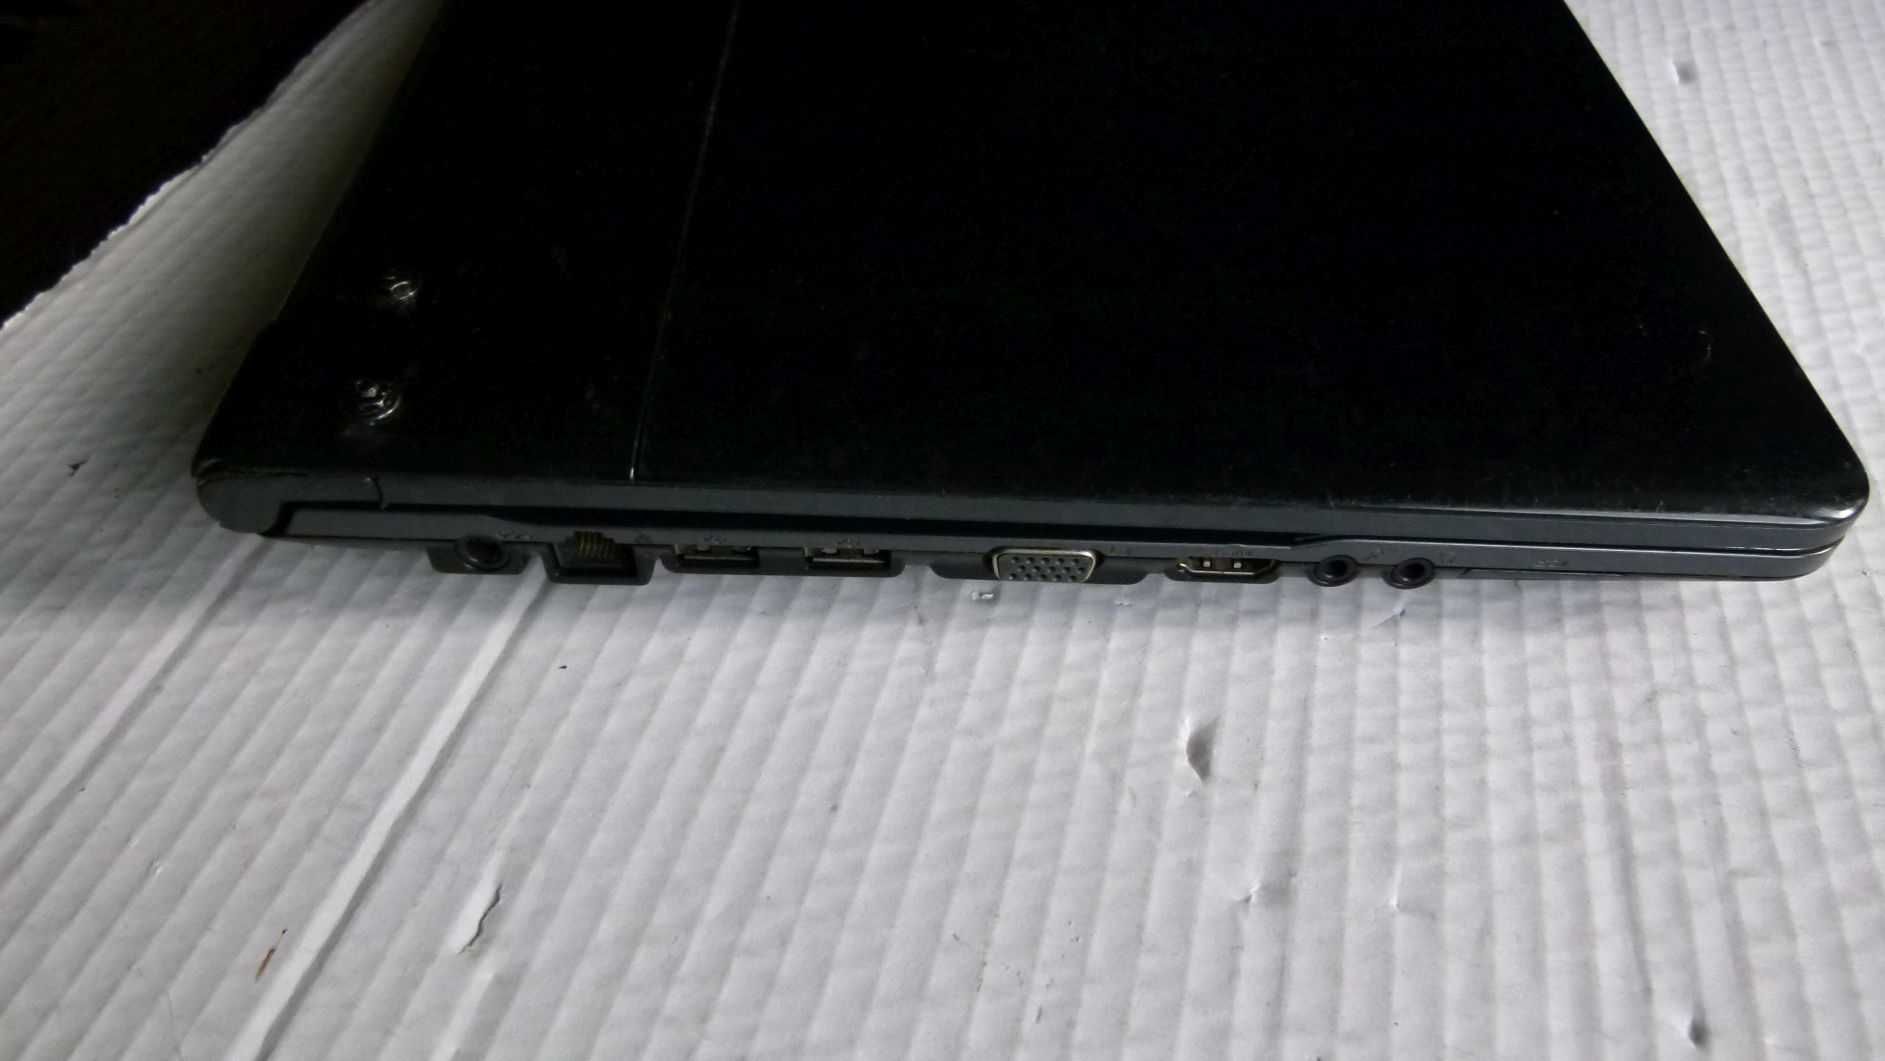 Laptop Samsung NP-RC520-S04PL sprawny uszkodzenia obudowy